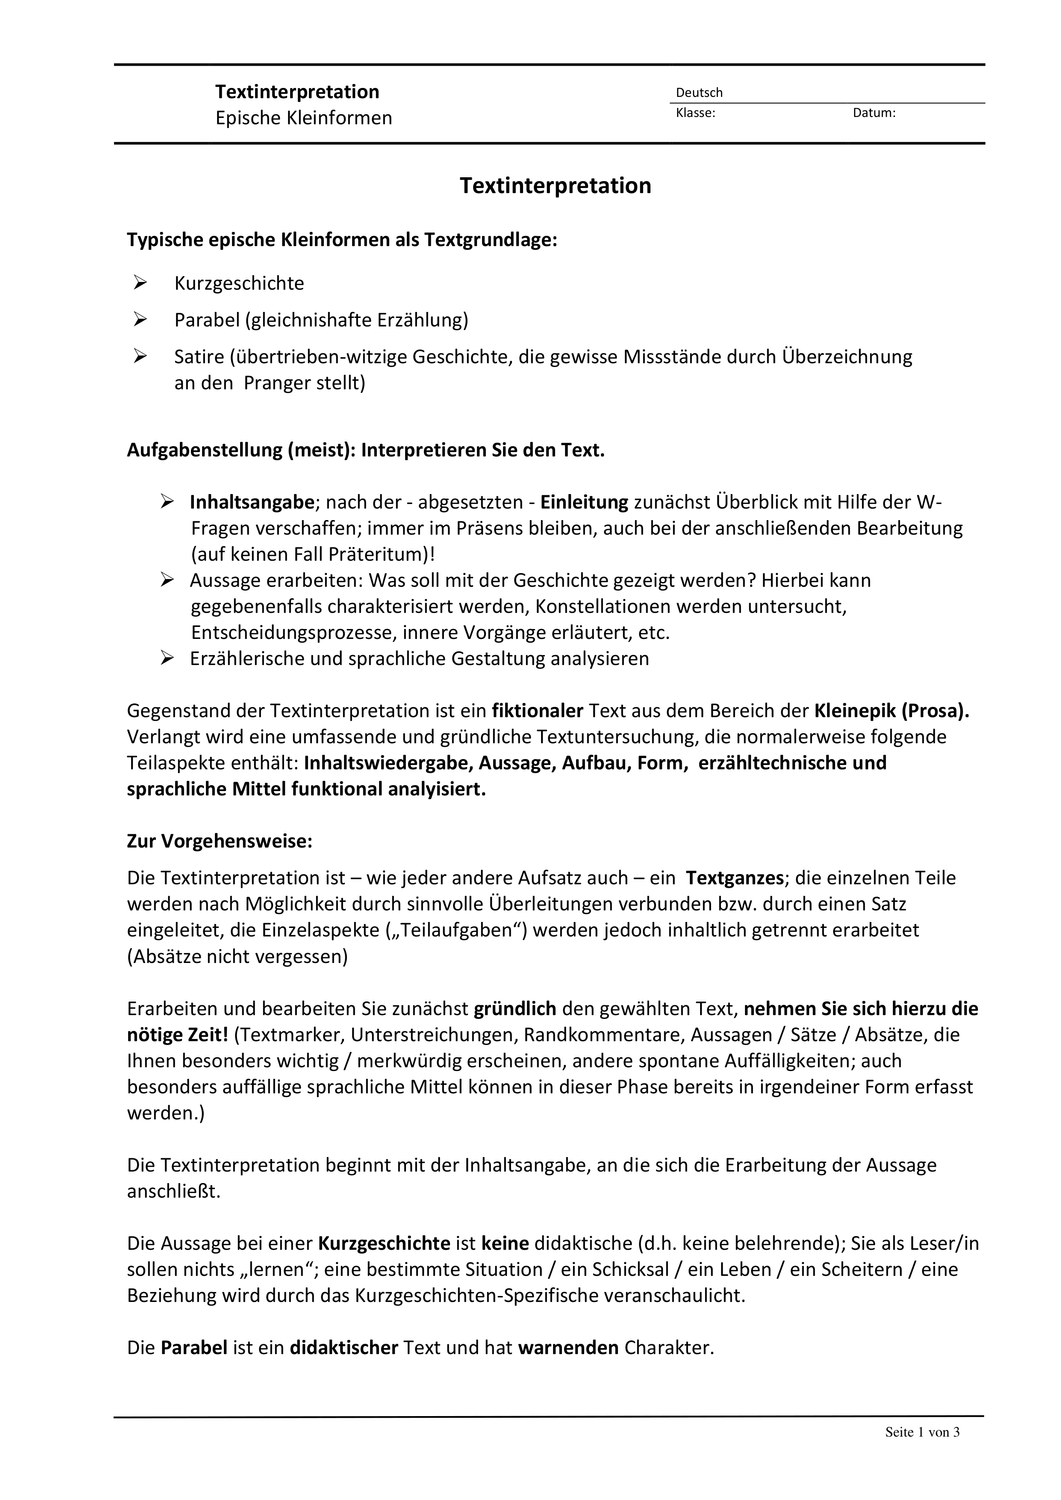 Textinterpretation Kurzprosa Unterrichtsmaterial Im Fach Deutsch Kurzgeschichte Interpretation W Fragen Kurzgeschichten